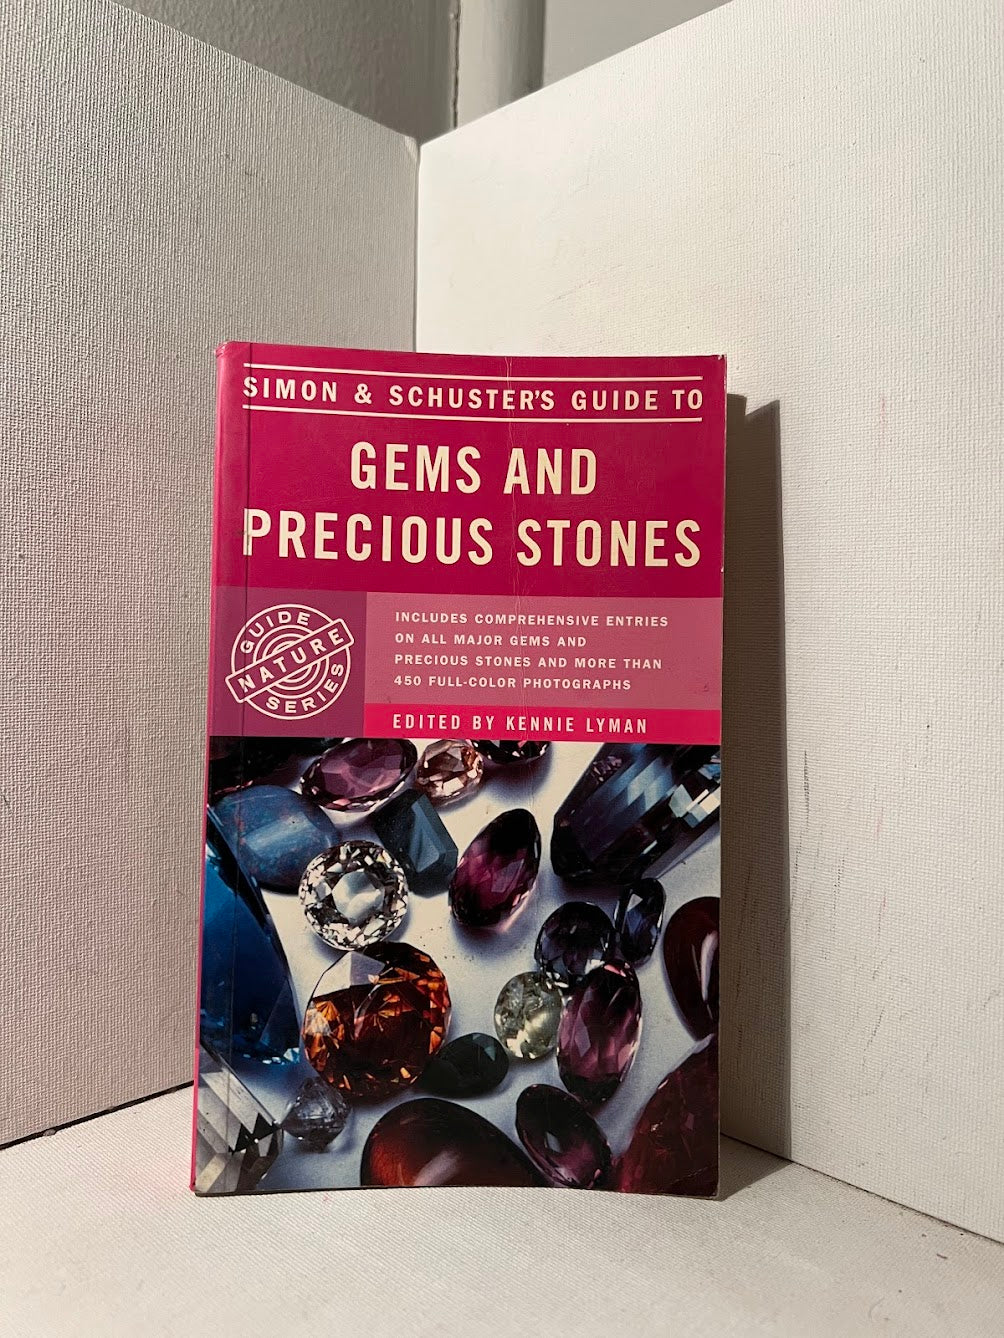 Gems and Precious Stones